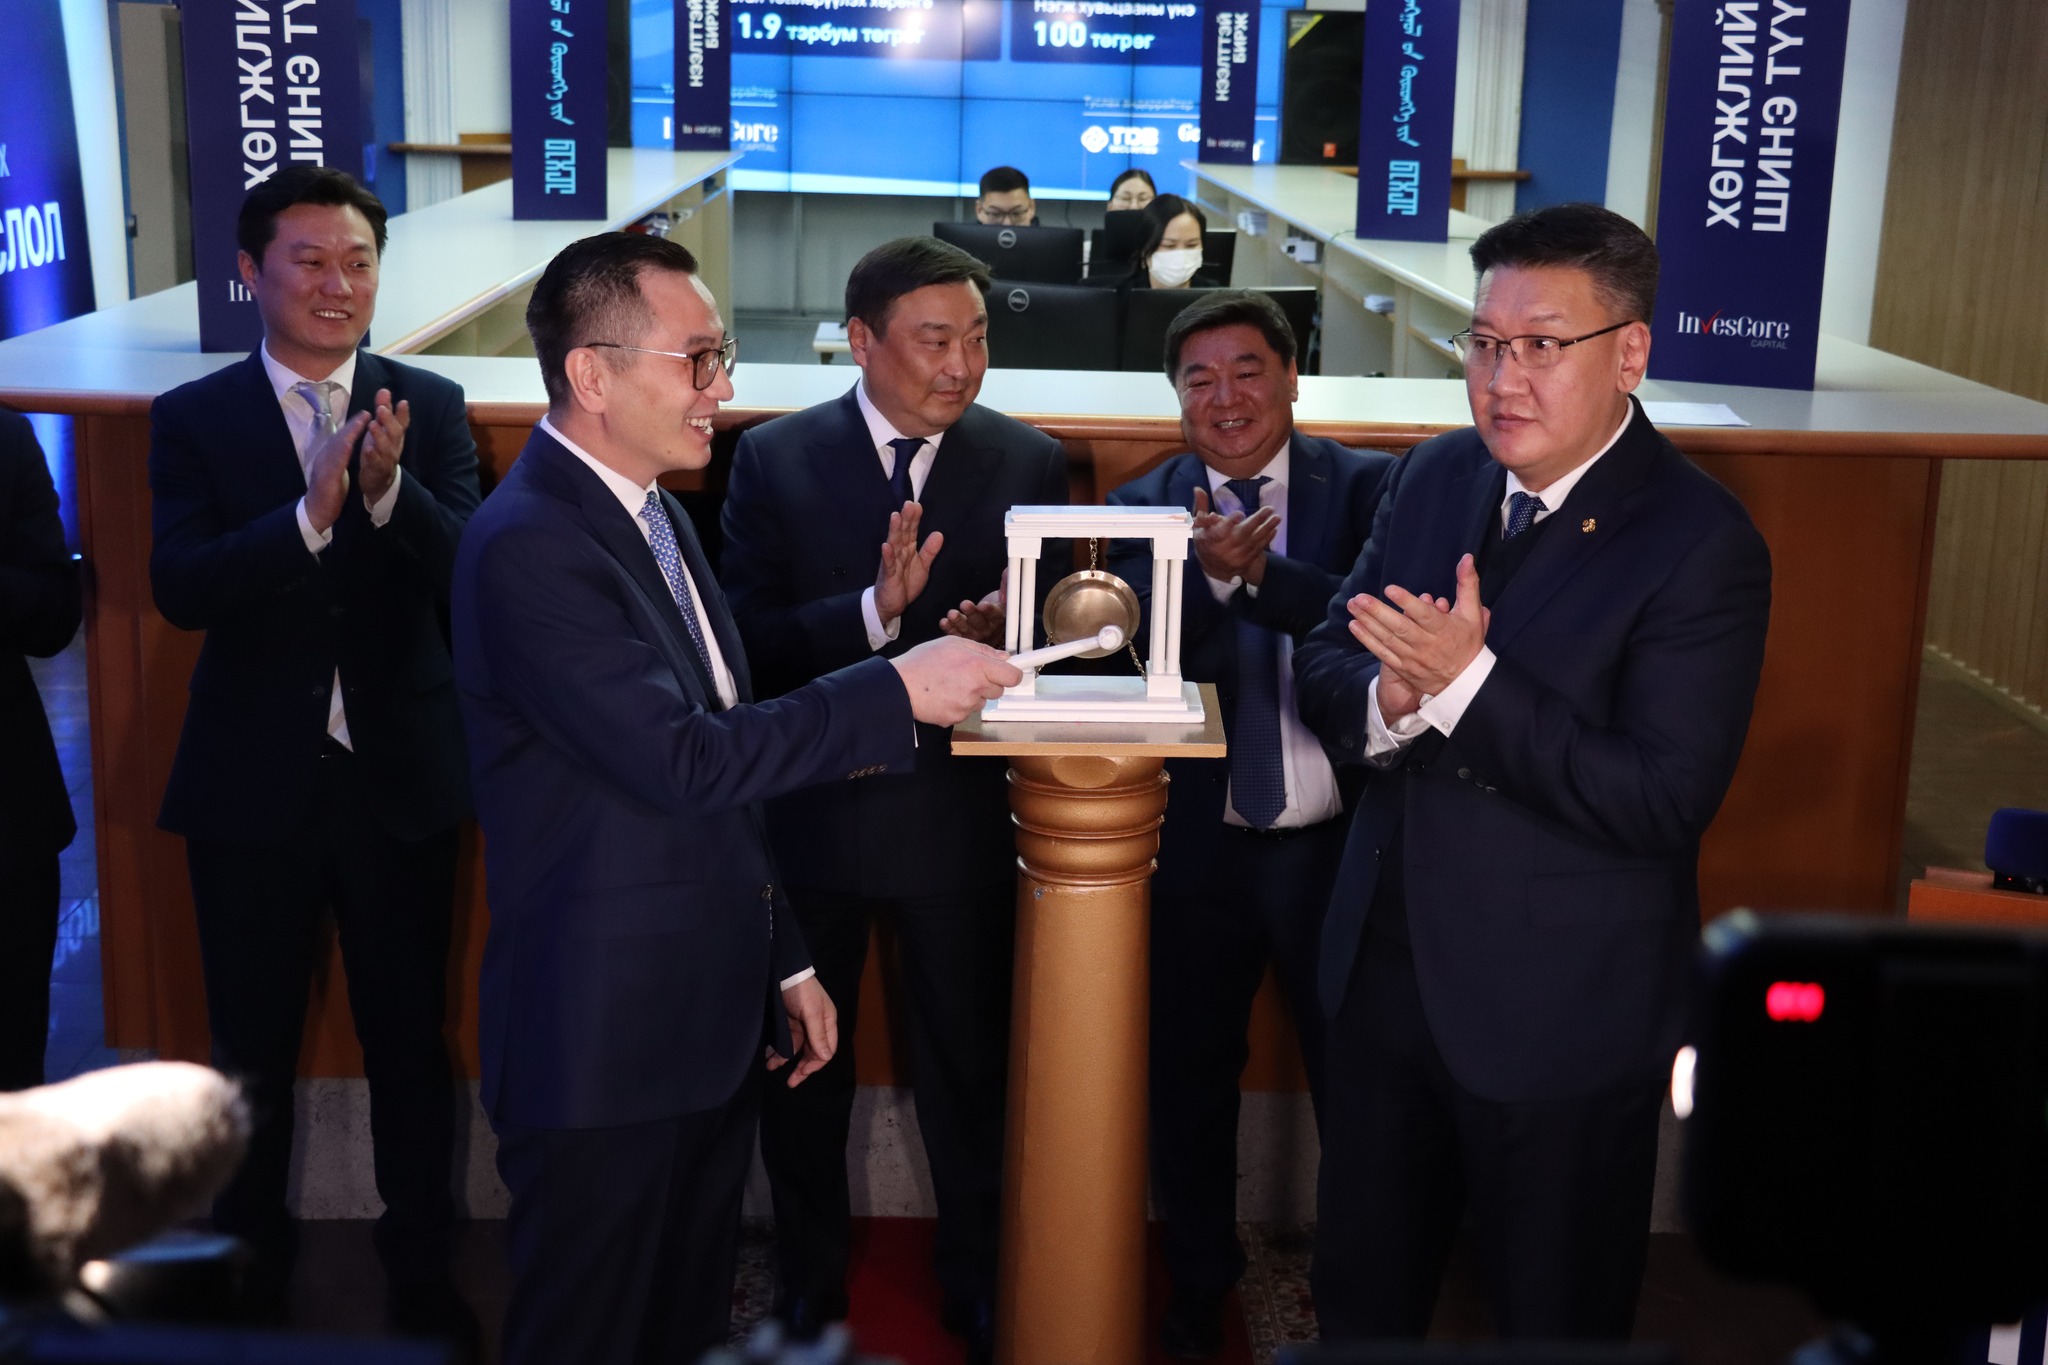 “Монголын Хөрөнгийн бирж” ТӨХК-ийн IPO-ийн нээлтийн цан цохих ёслол боллоо